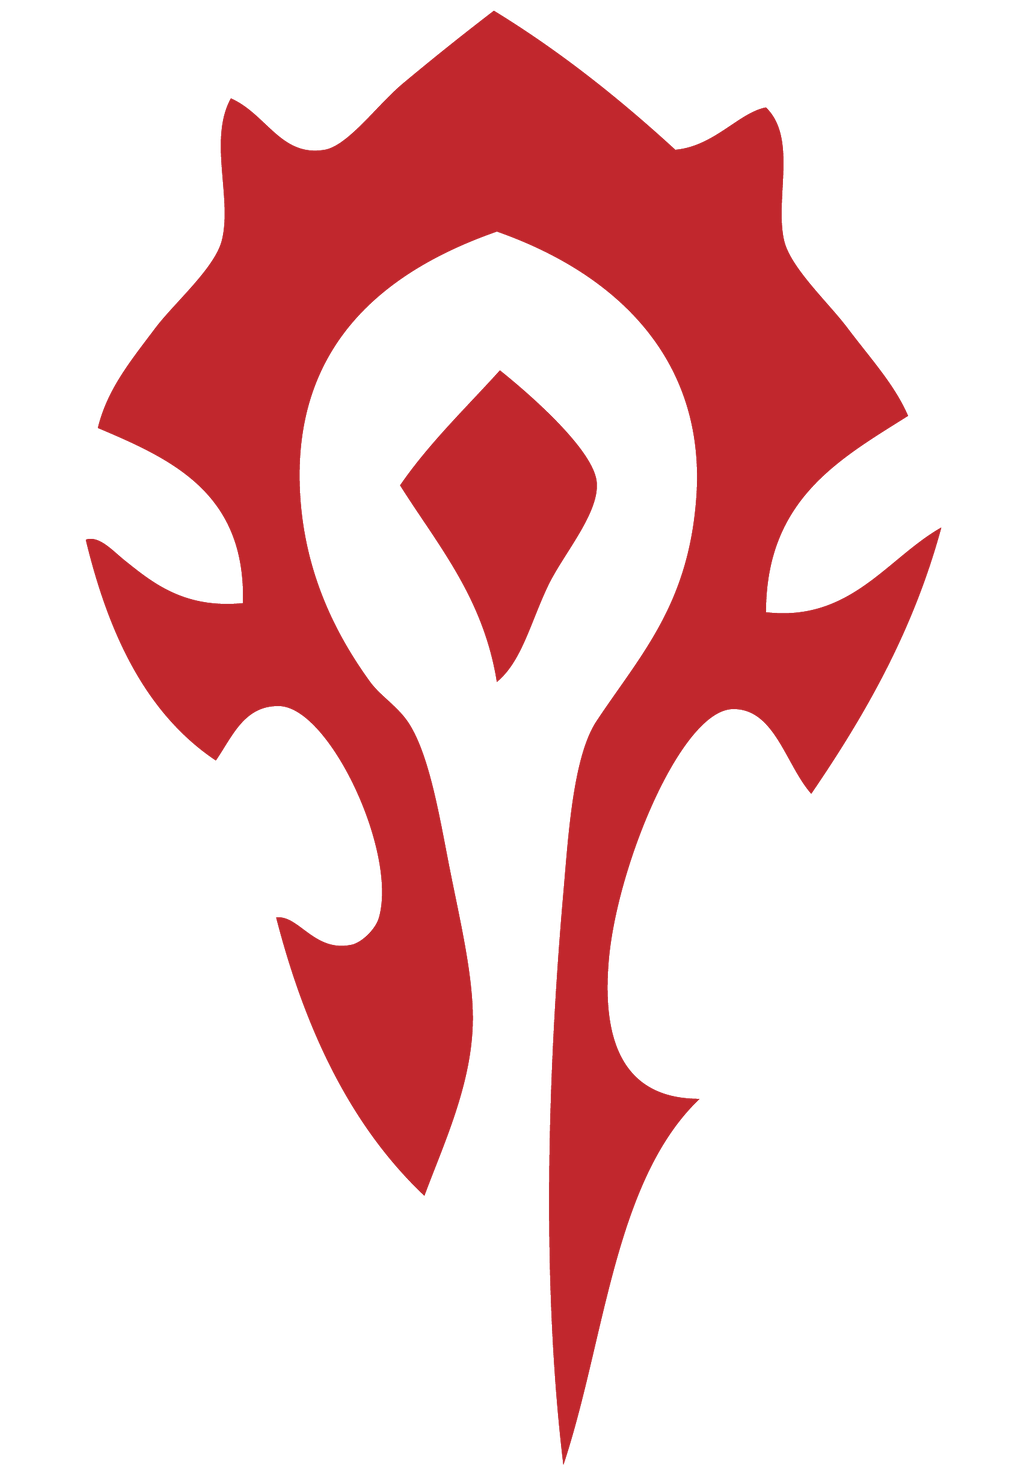 Horde Logo by Ammeg88 on DeviantArt